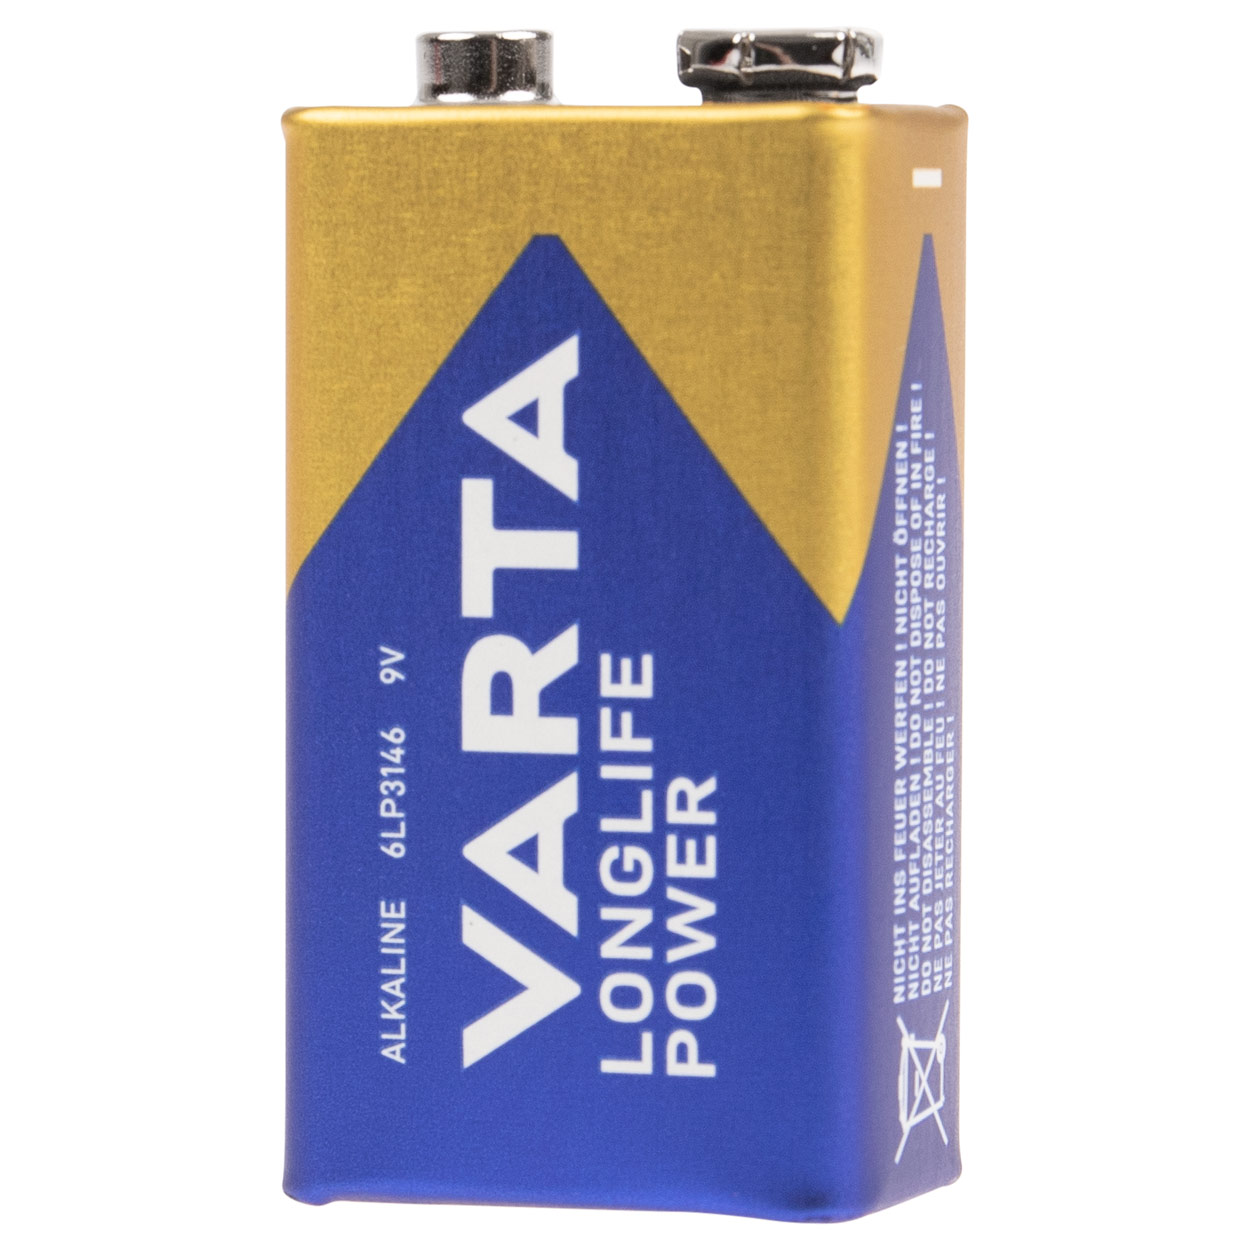 VARTA Longlife POWER E-Block 9V, 1 piece buy online